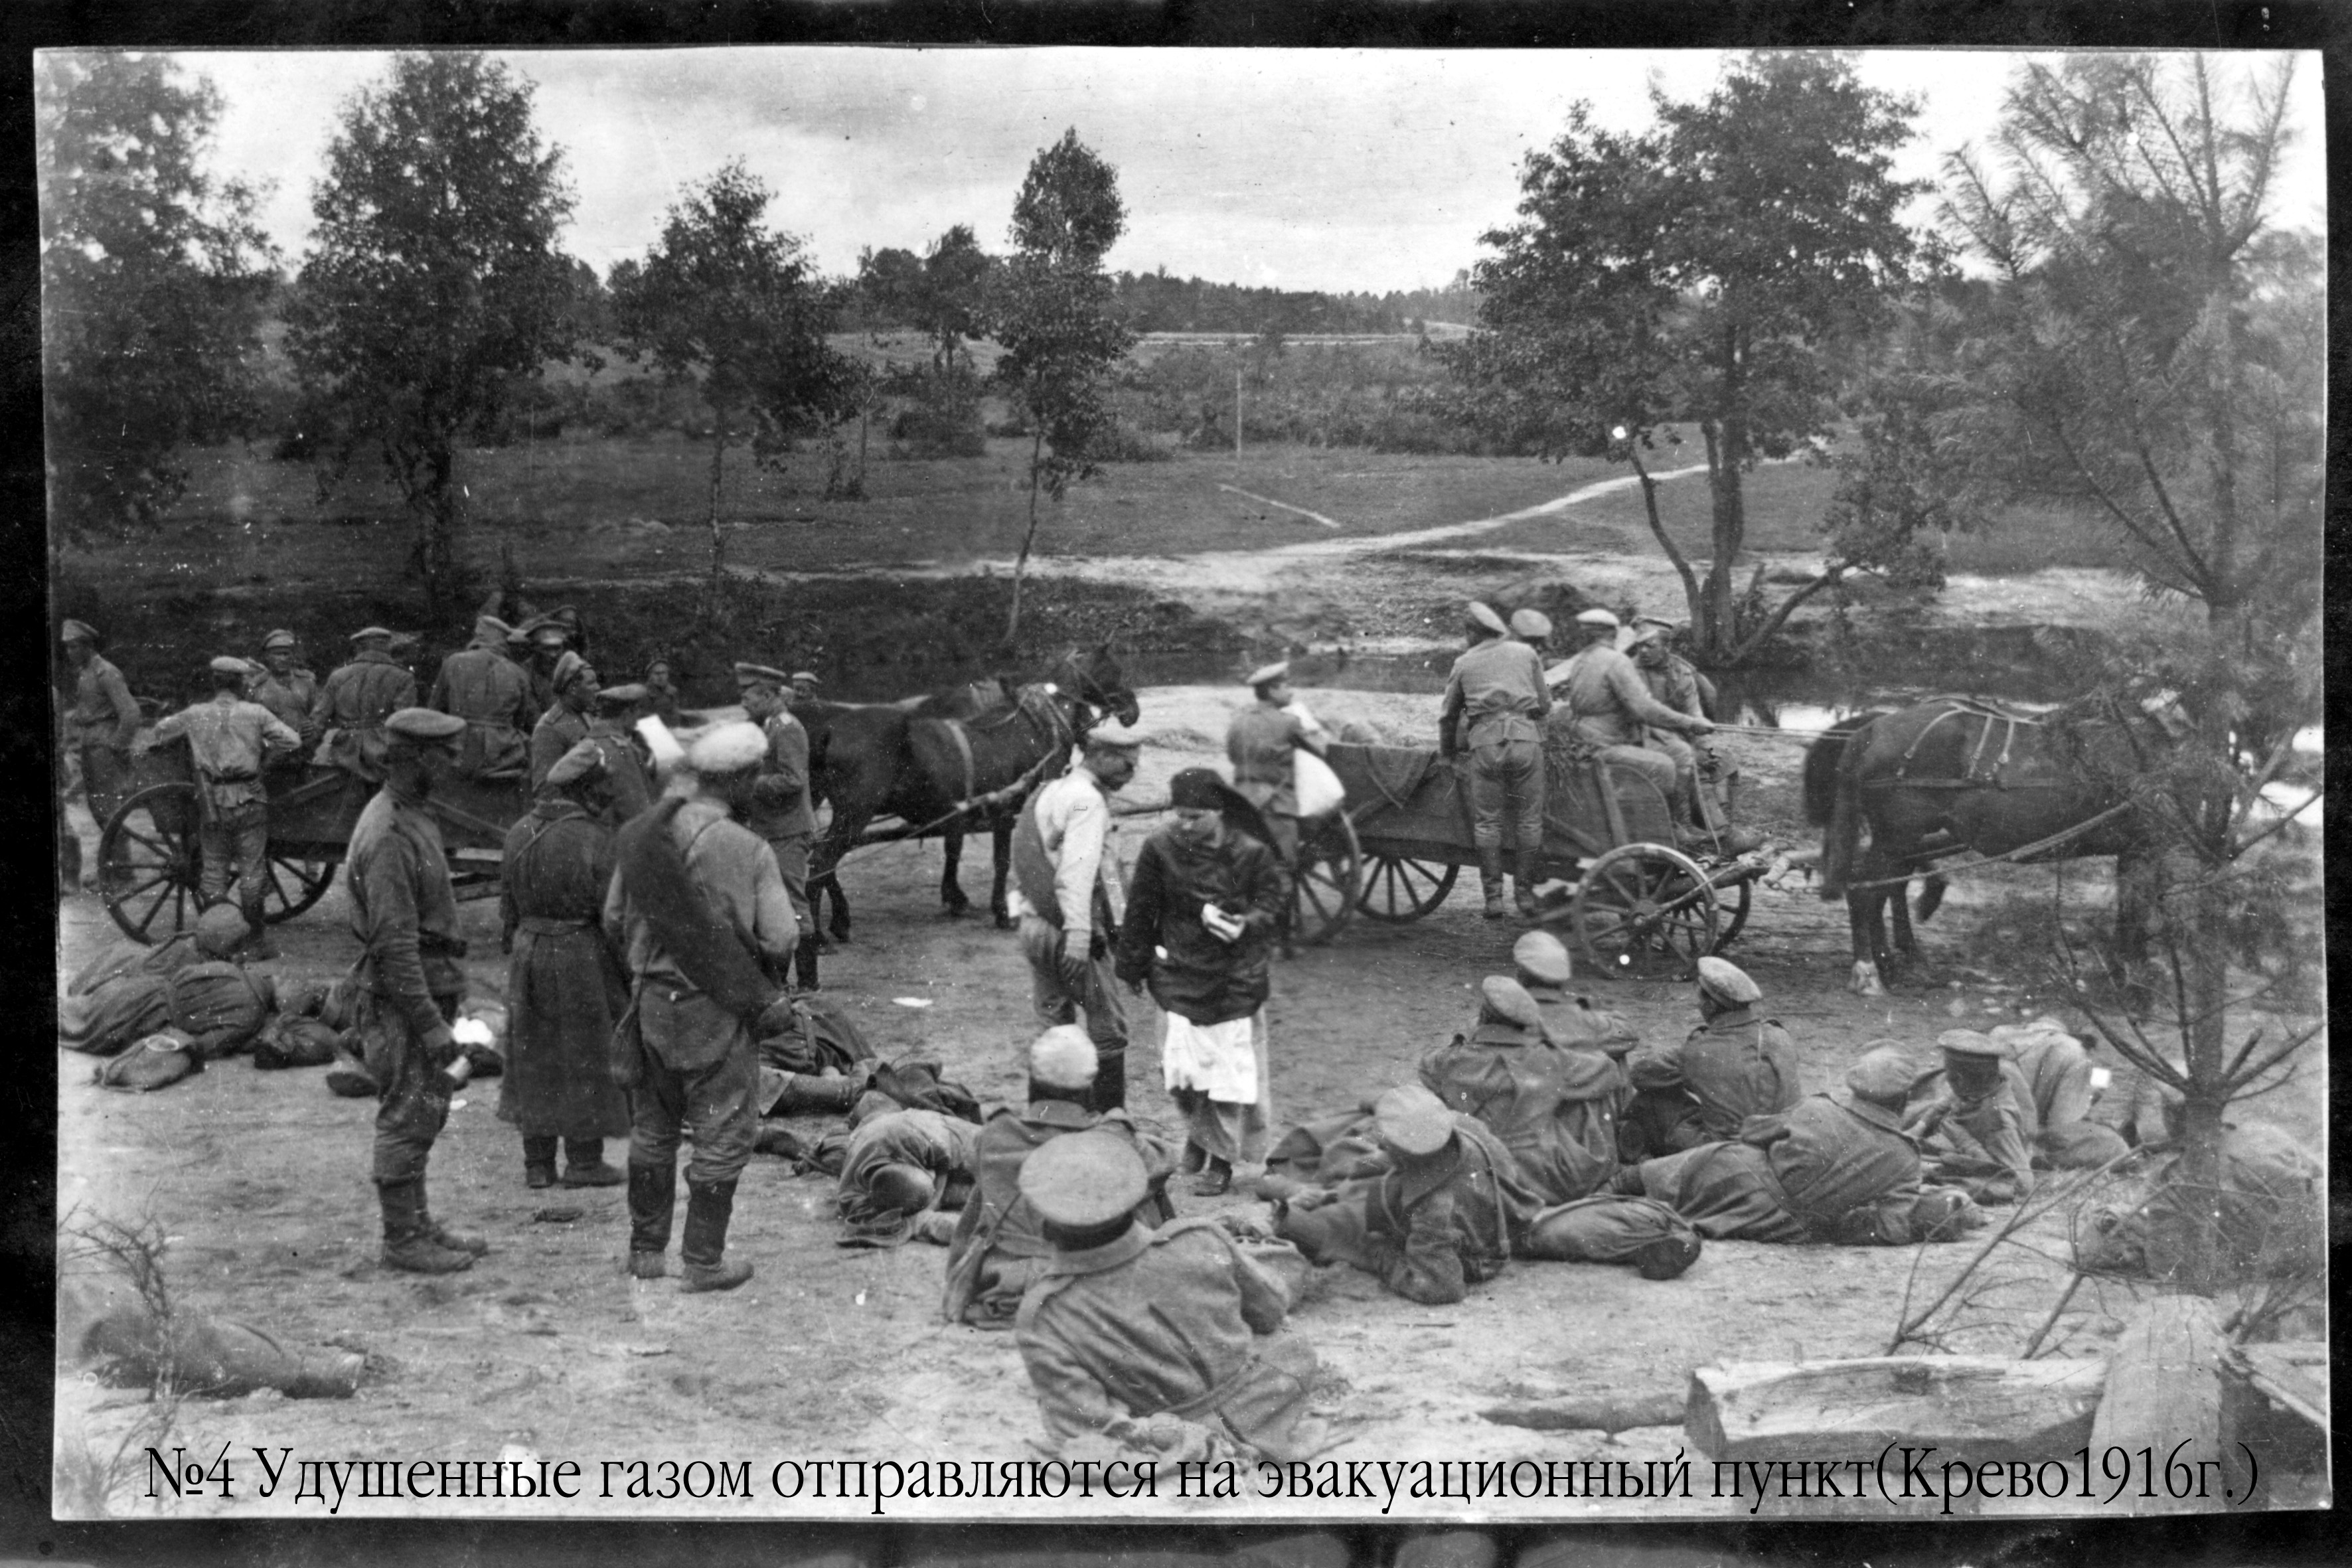 Dujomis apnuodyti kareiviai vyksta į evakuacijos punktą. Krėva, 1916 m.